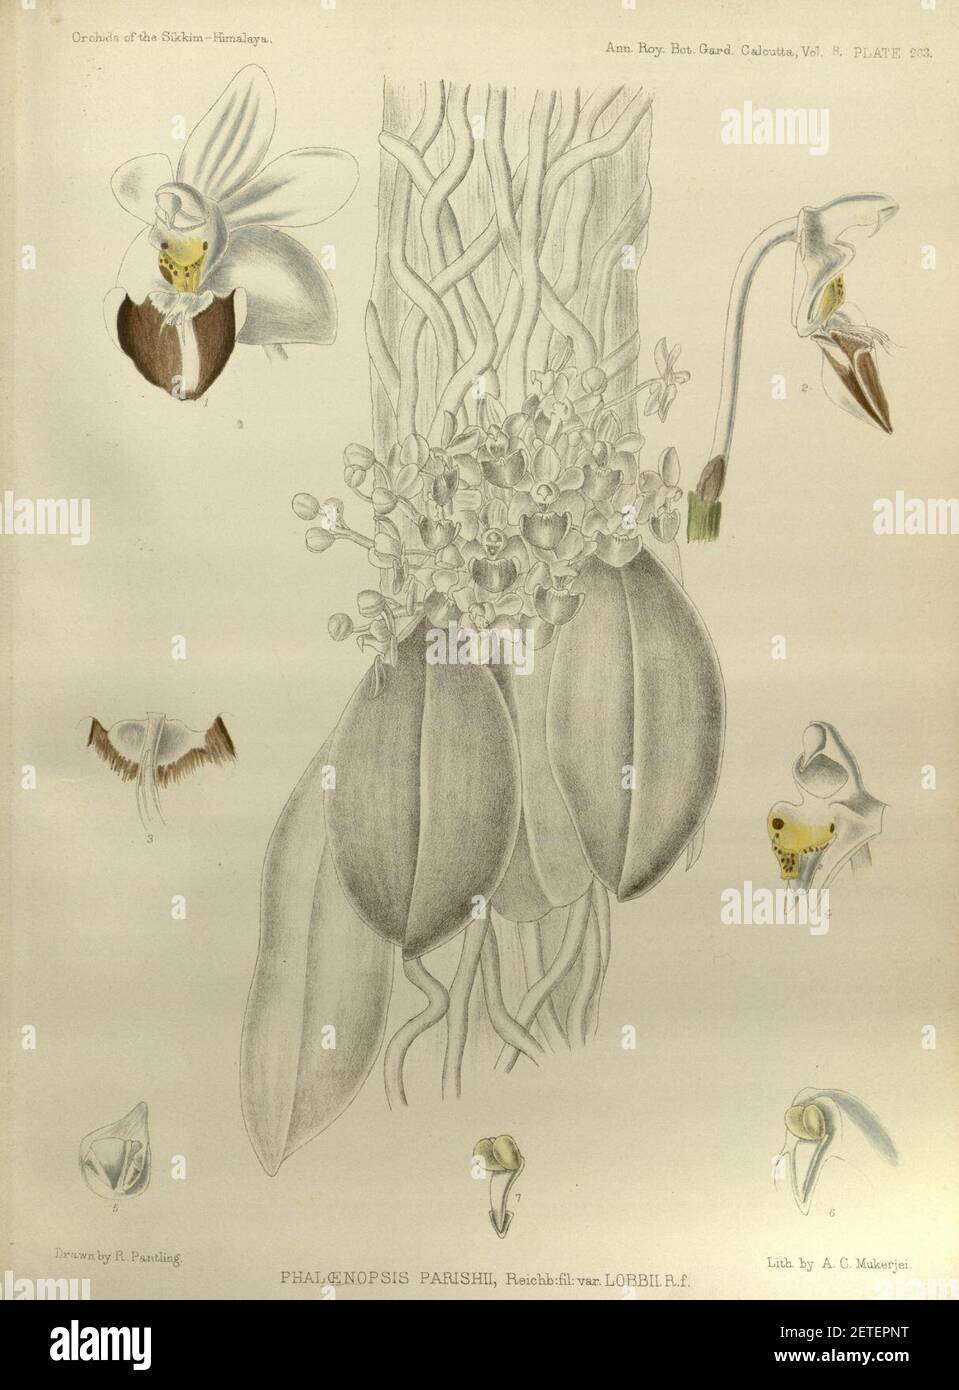 Phalaenopsis lobbii (as Phalaenopsis parishii) - The Orchids of the Sikkim-Himalaya pl 263 (1889). Stock Photo